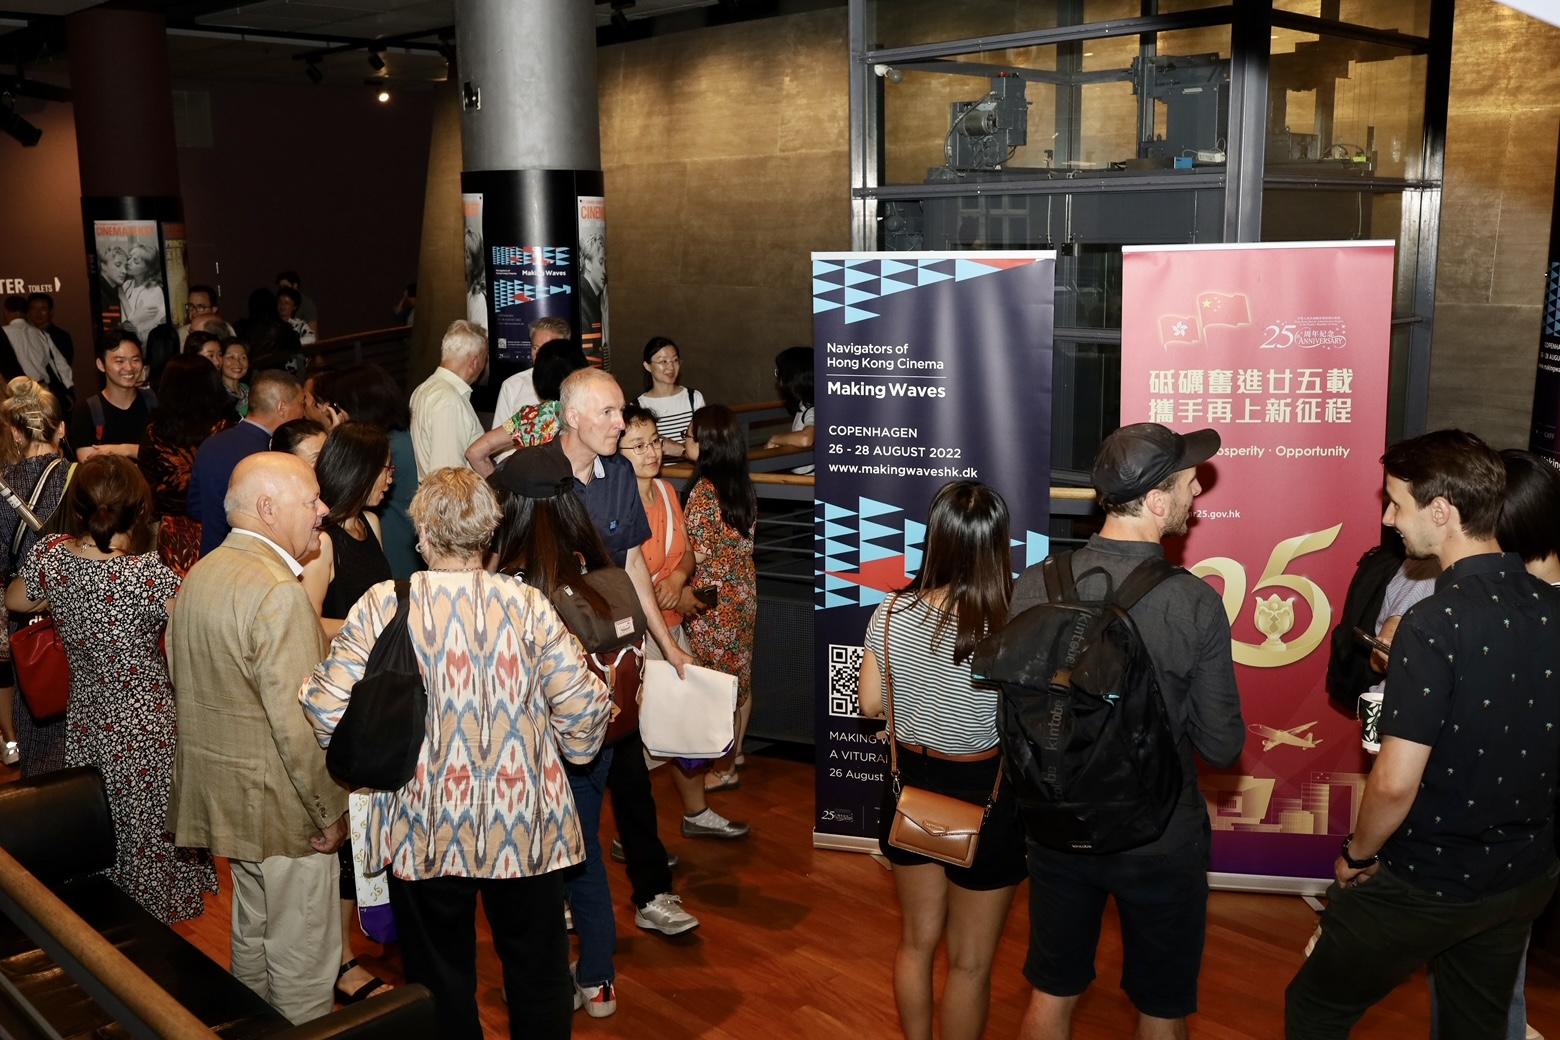 为纪念香港特别行政区成立二十五周年，香港驻伦敦经济贸易办事处支持「光影浪潮：香港电影新动力」，于八月二十六日至二十八日（哥本哈根时间）在丹麦哥本哈根放映一系列新香港电影和经典香港电影。图示丹麦哥本哈根「光影浪潮：香港电影新动力」开幕放映会现场。